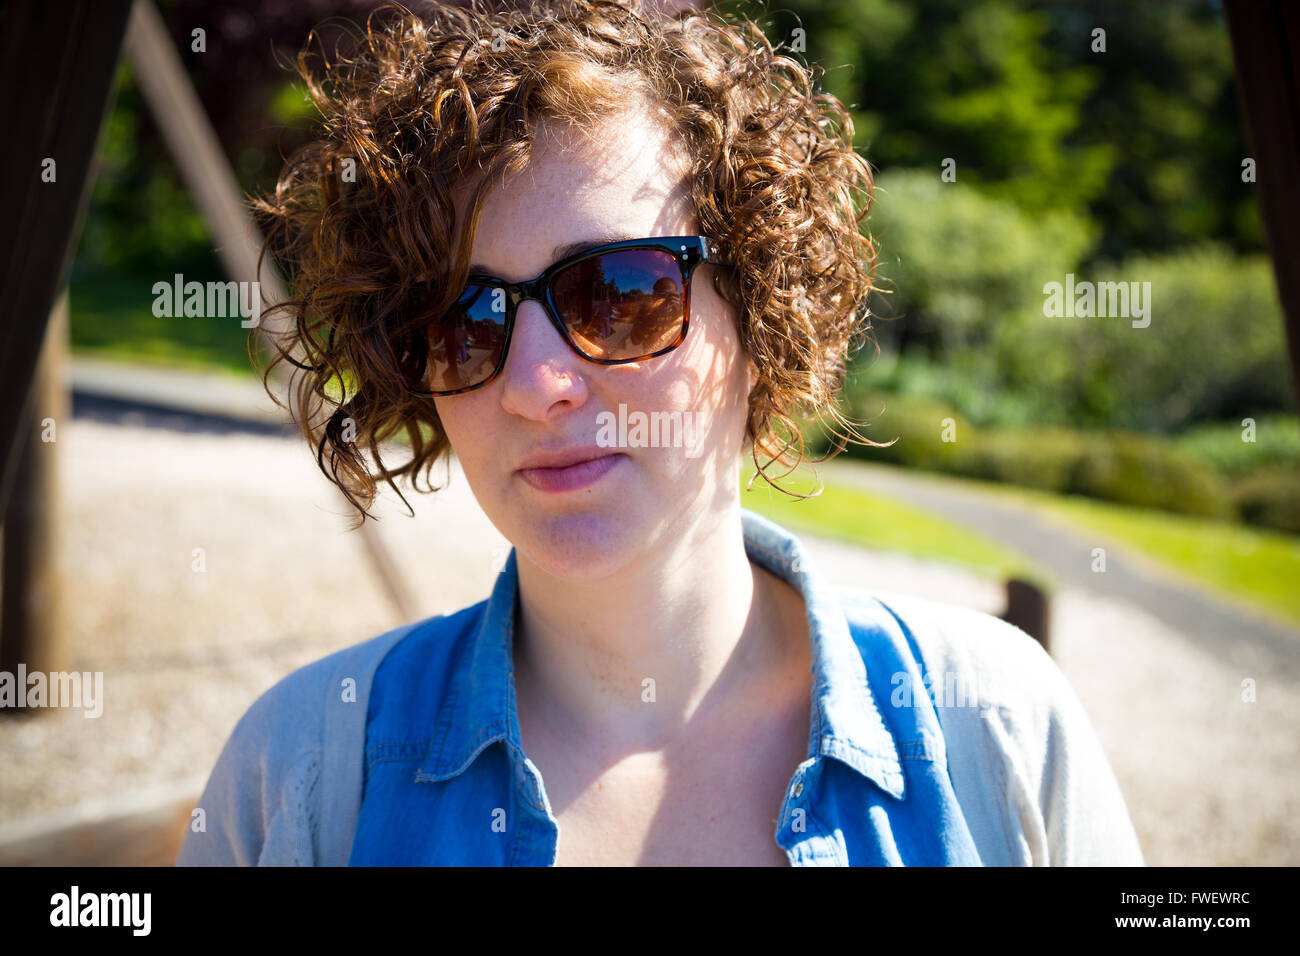 Diese schöne, attraktive Frau trägt Sonnenbrille im Freien in einem Park für ein einfaches Porträt einer weiblichen Person. Stockfoto